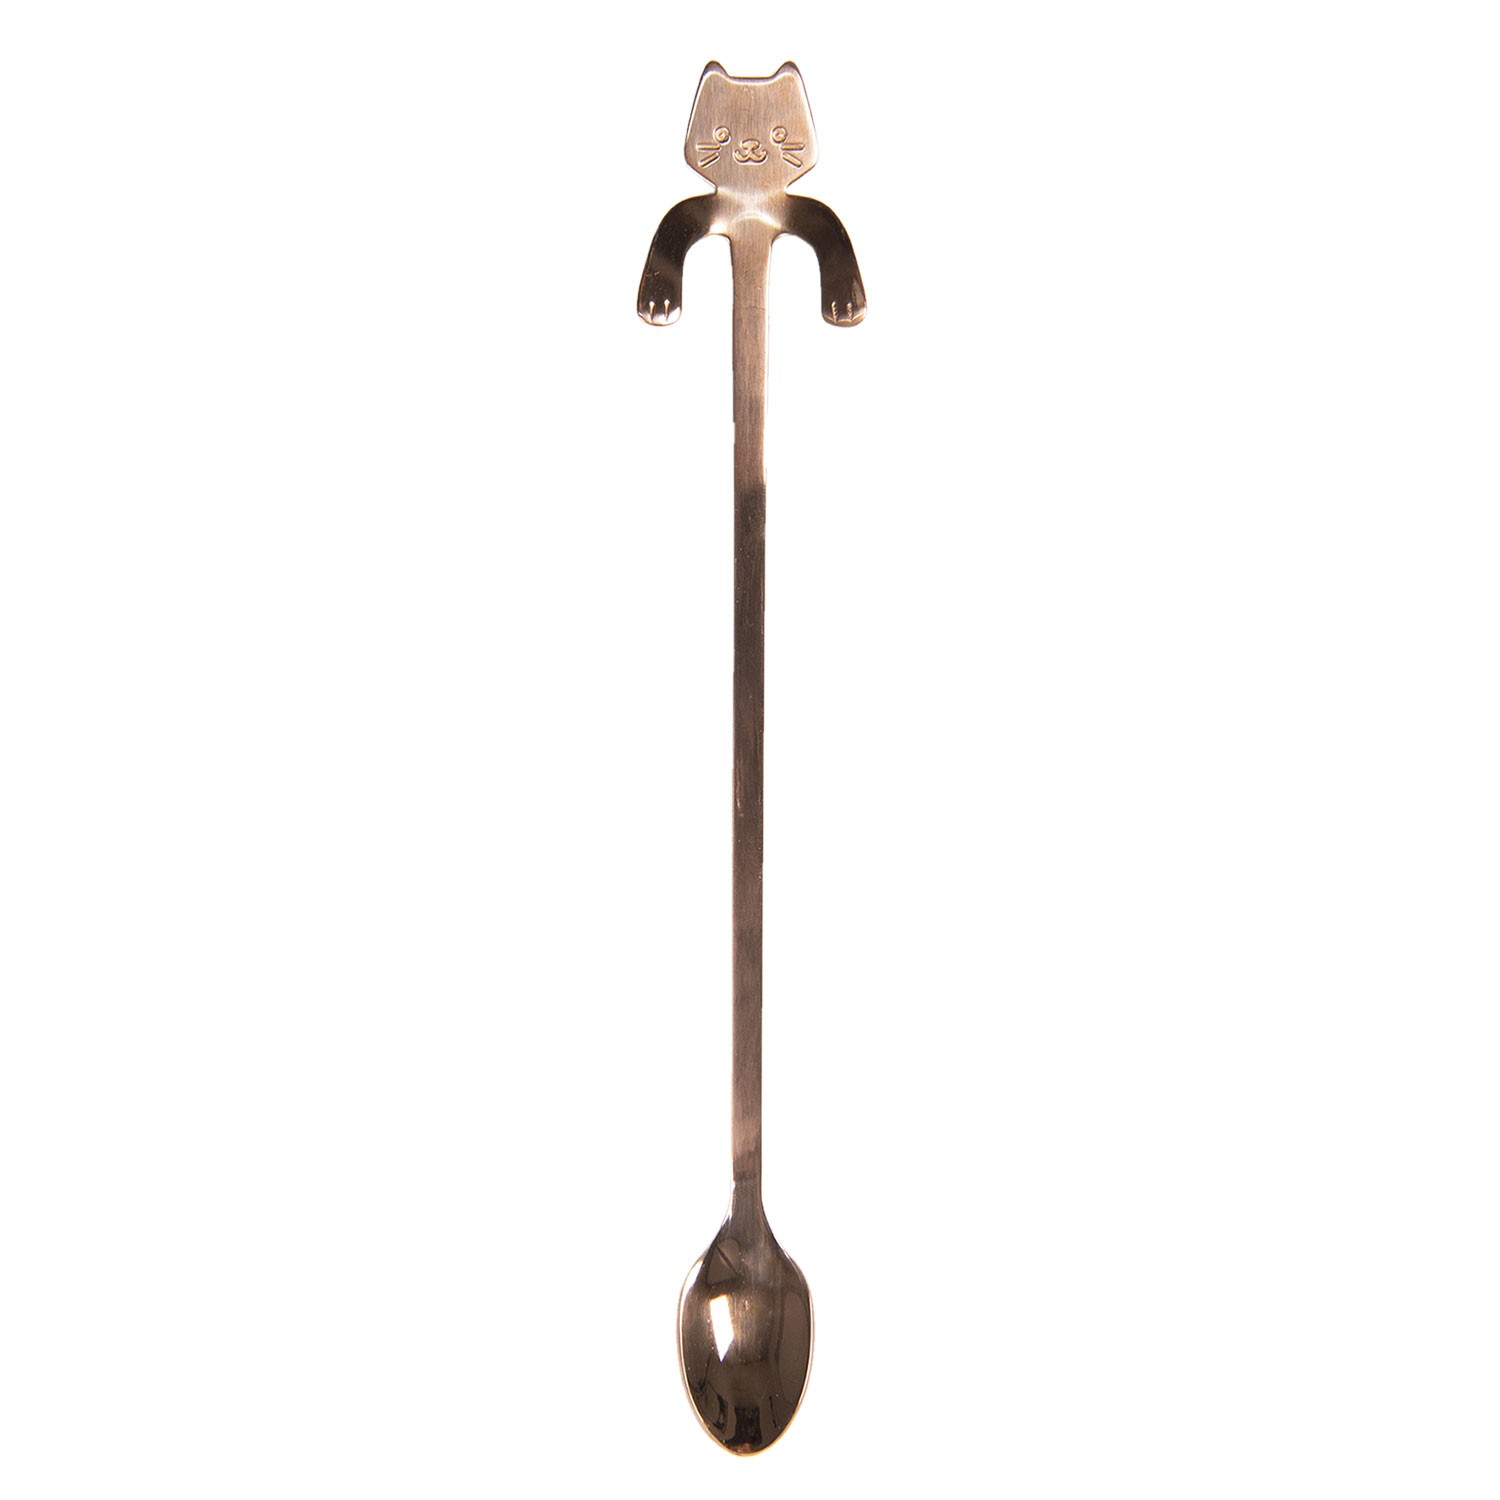 Úzká dlouhá lžička s kočičkou - bronzová - 3*20 cm Clayre & Eef